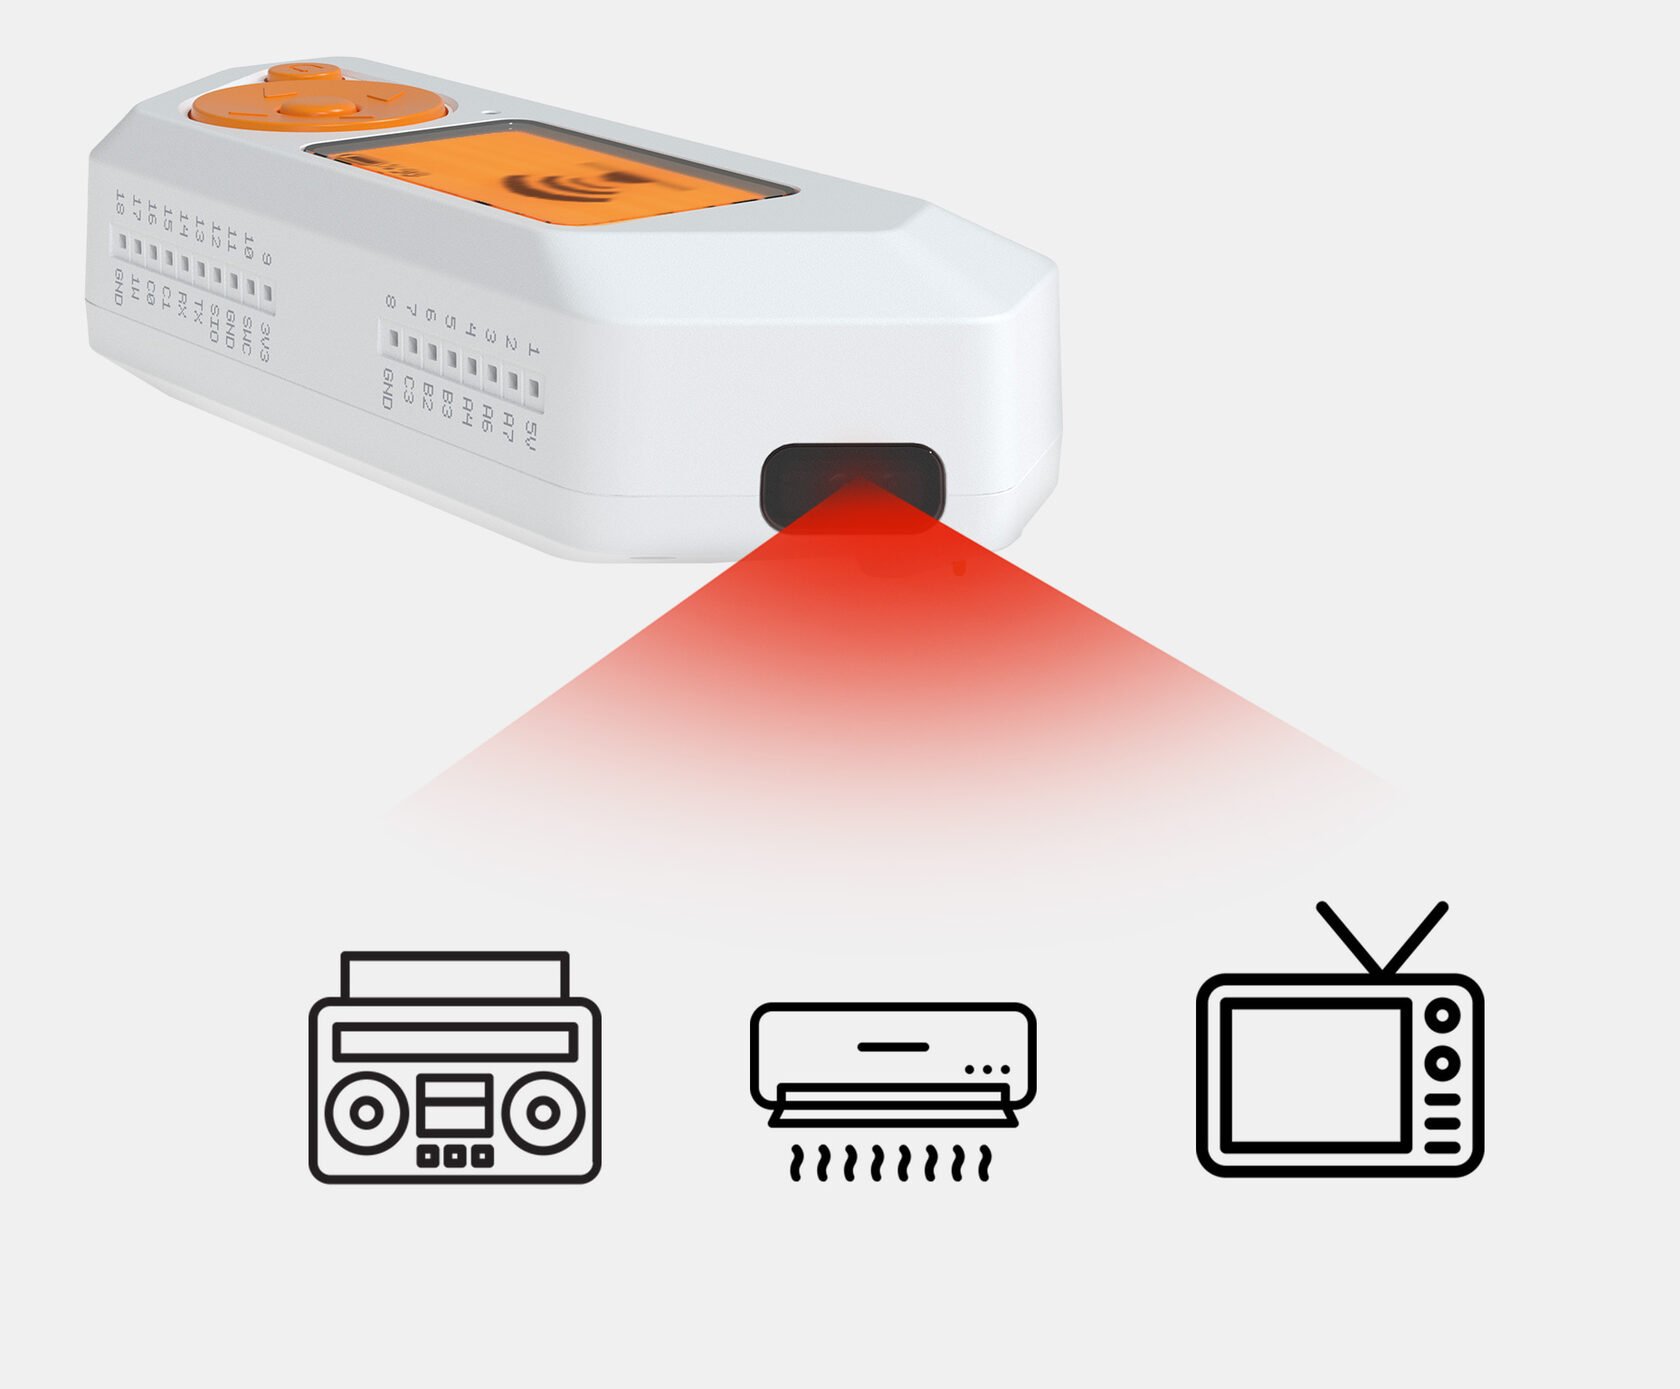 Uma das funções do Flipper Zero é testar aparelhos com sinais infravermelhos.